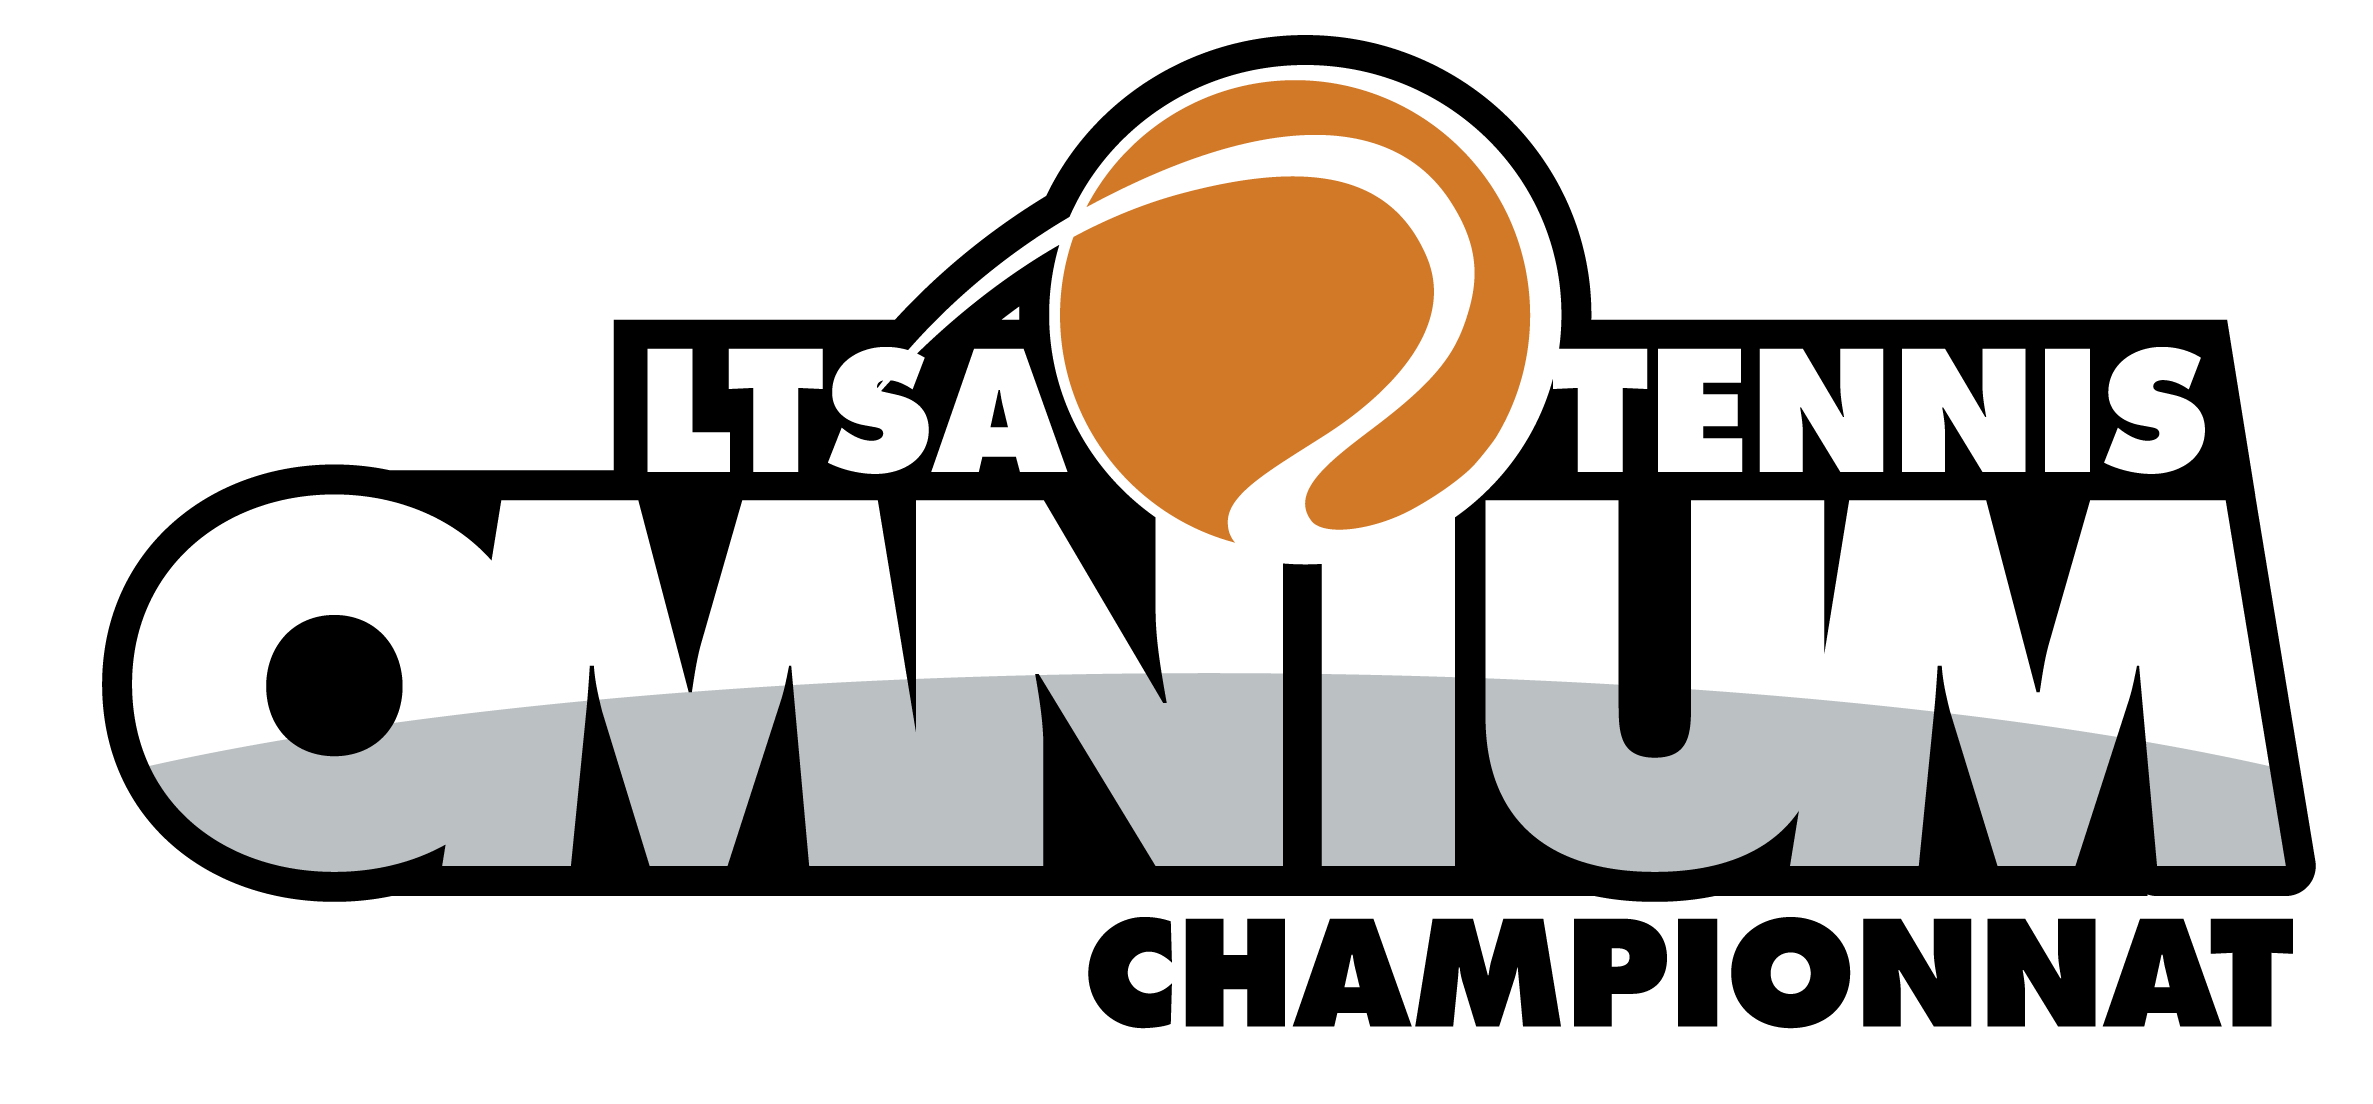 LTSA_Omnium_Championnat